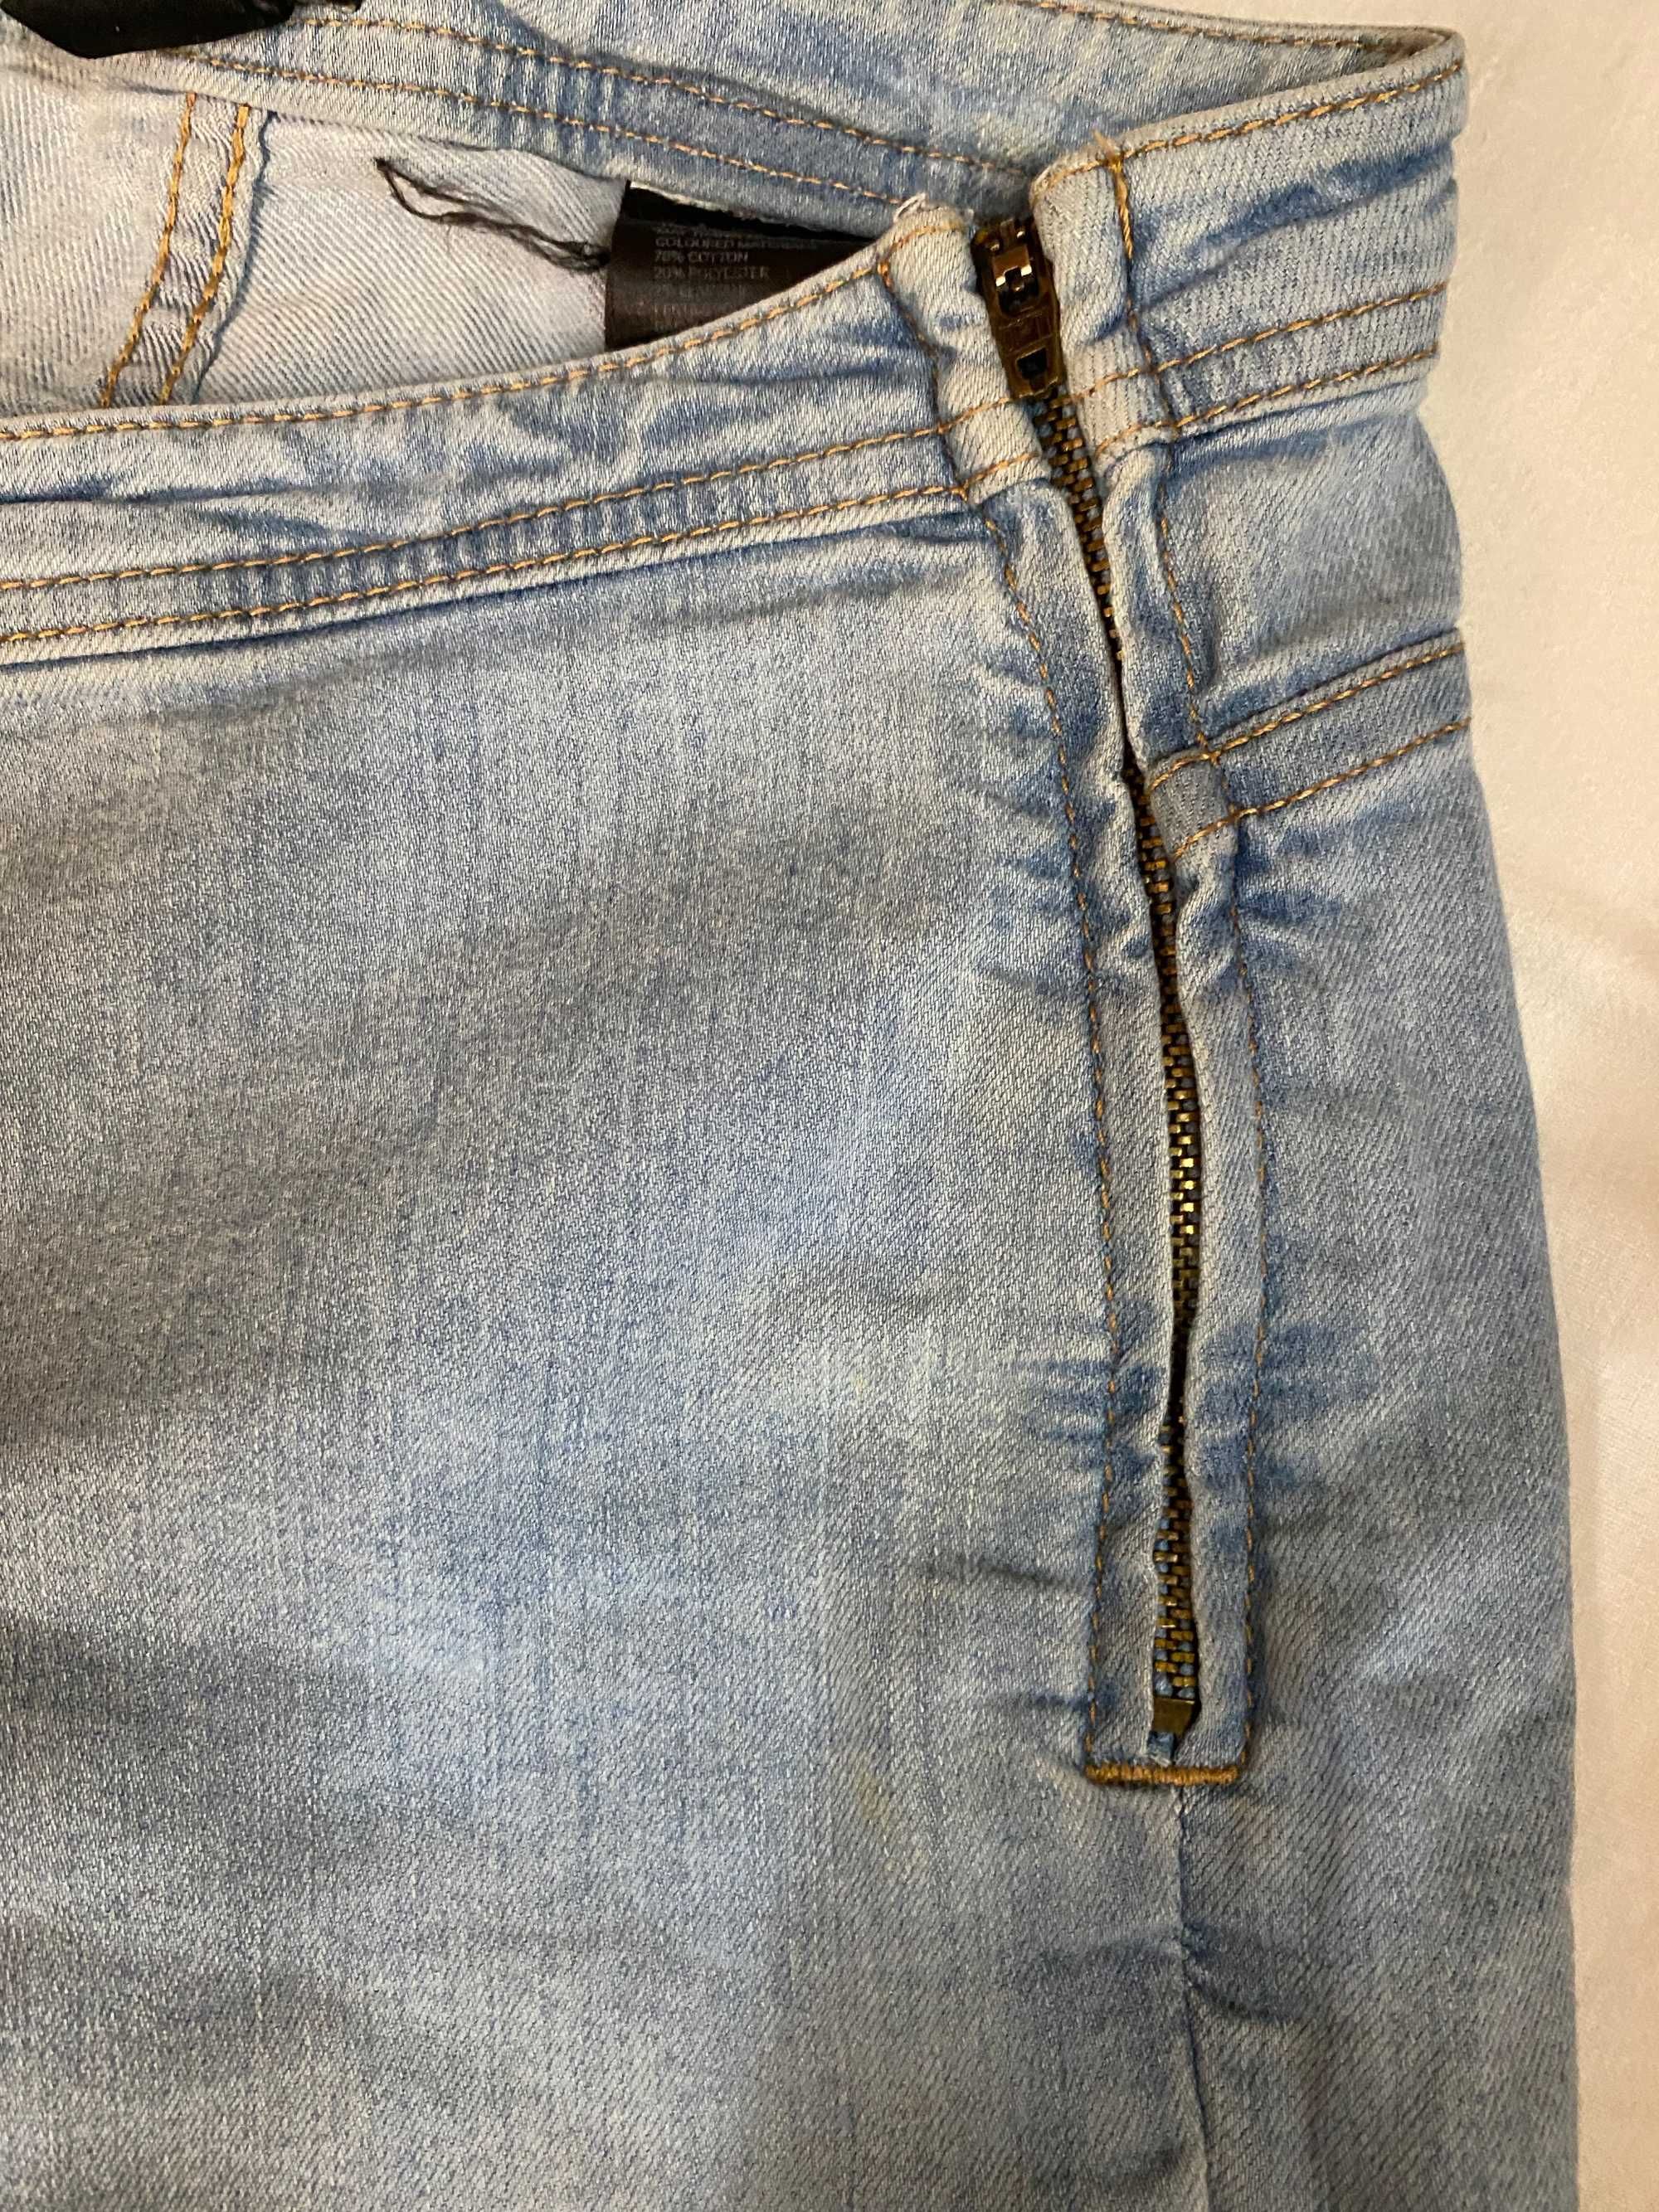 Spodnie damskie jeansowe dżinsowe rurki długie H&M vintage 38/M 36/S